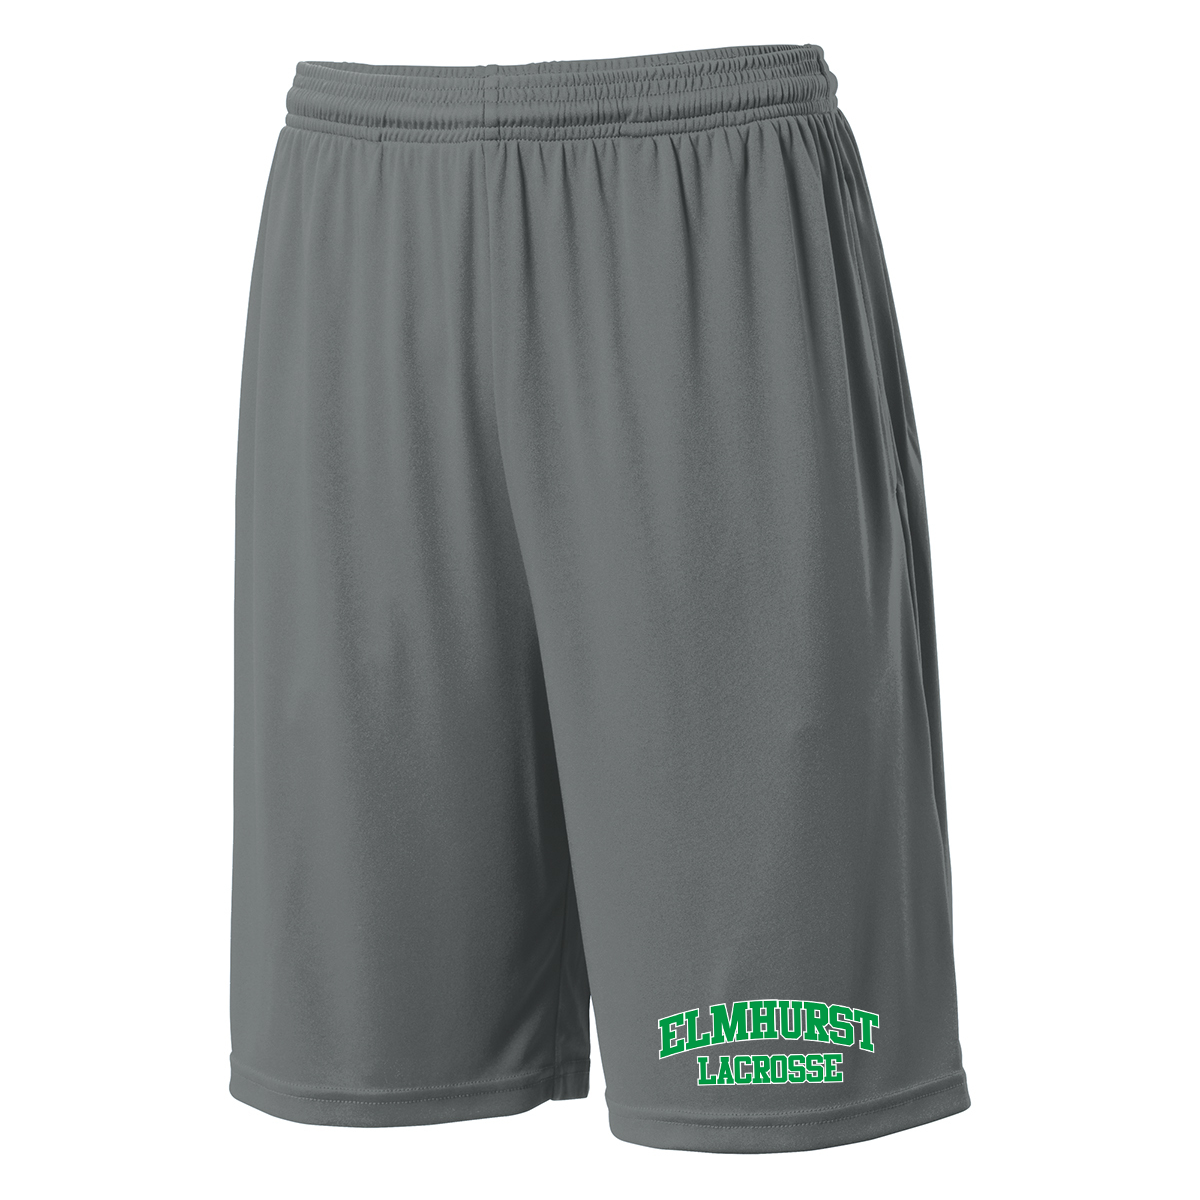 Elmhurst Lacrosse Shorts